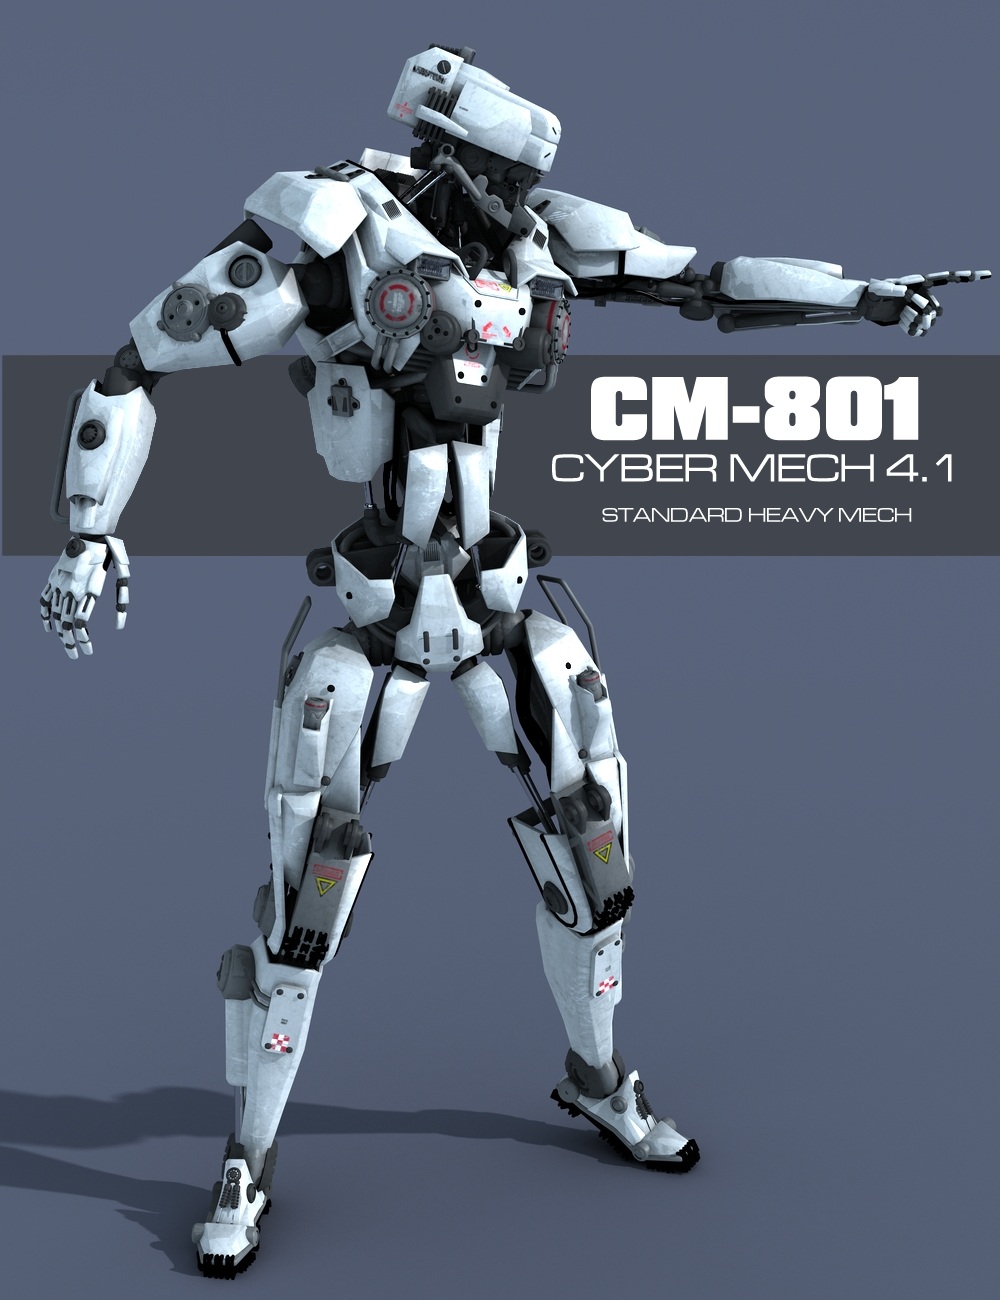 CyberMech 4.1 by: DzFire, 3D Models by Daz 3D